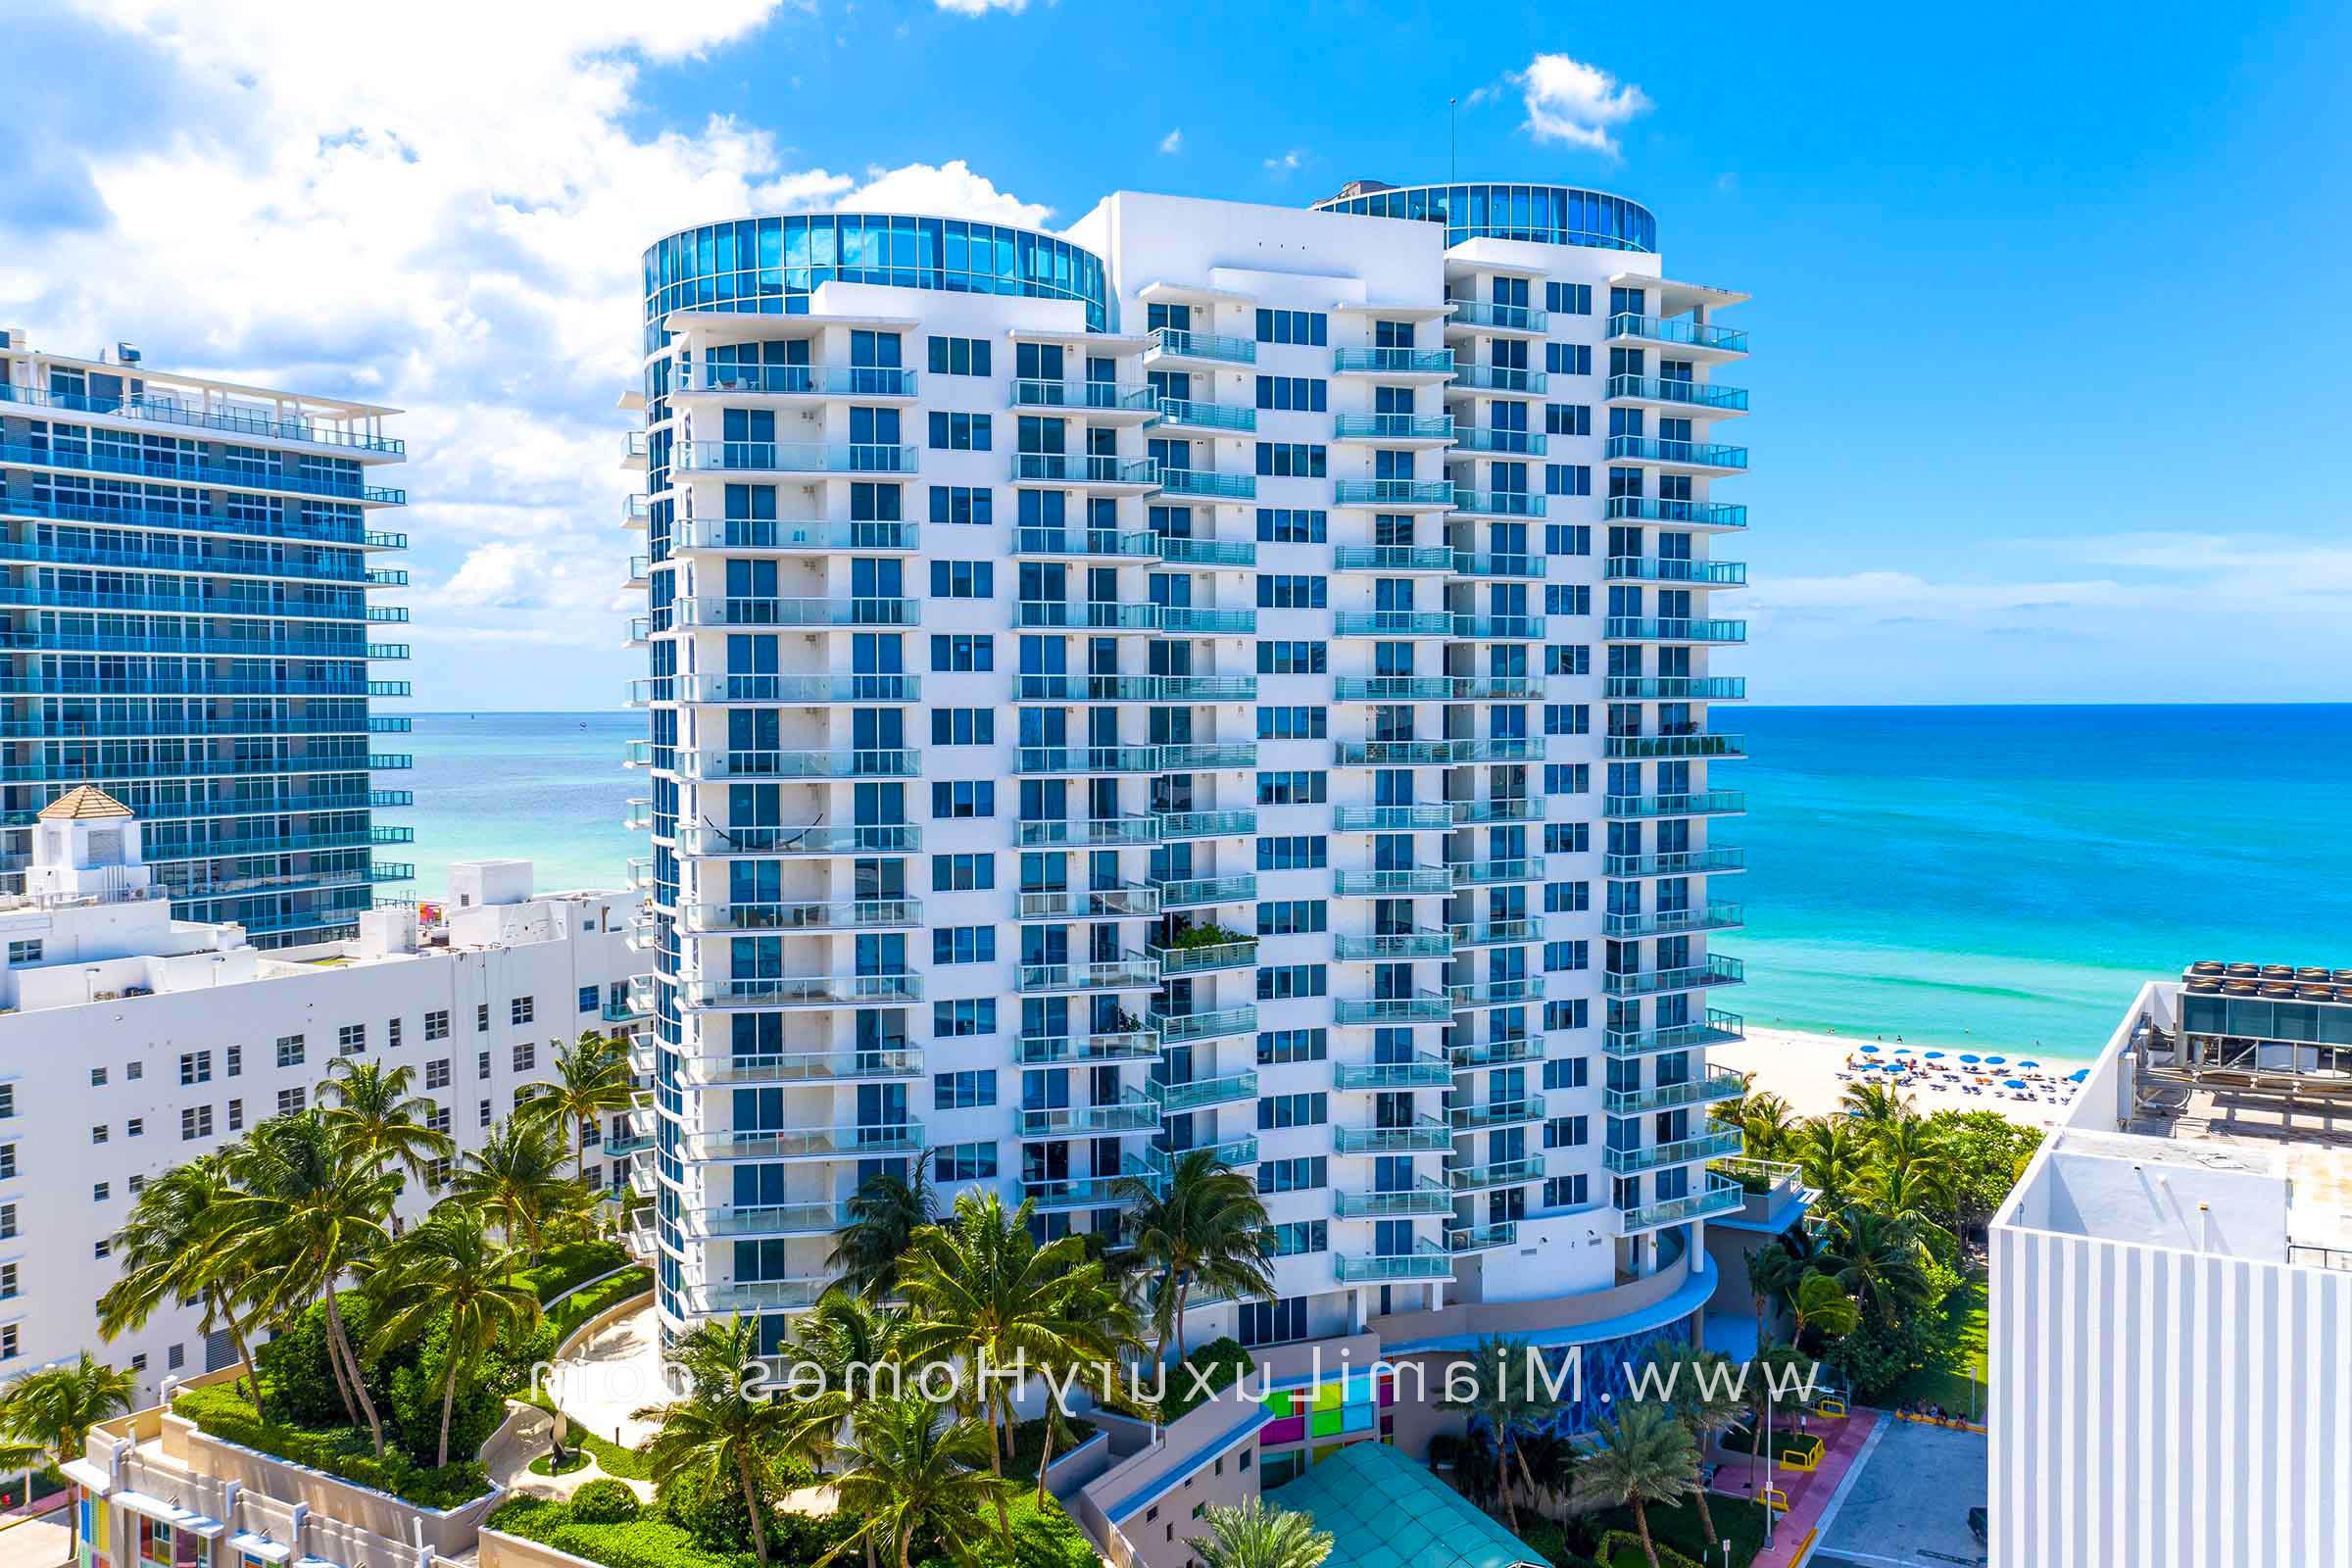 马赛克公寓大楼迈阿密海滩